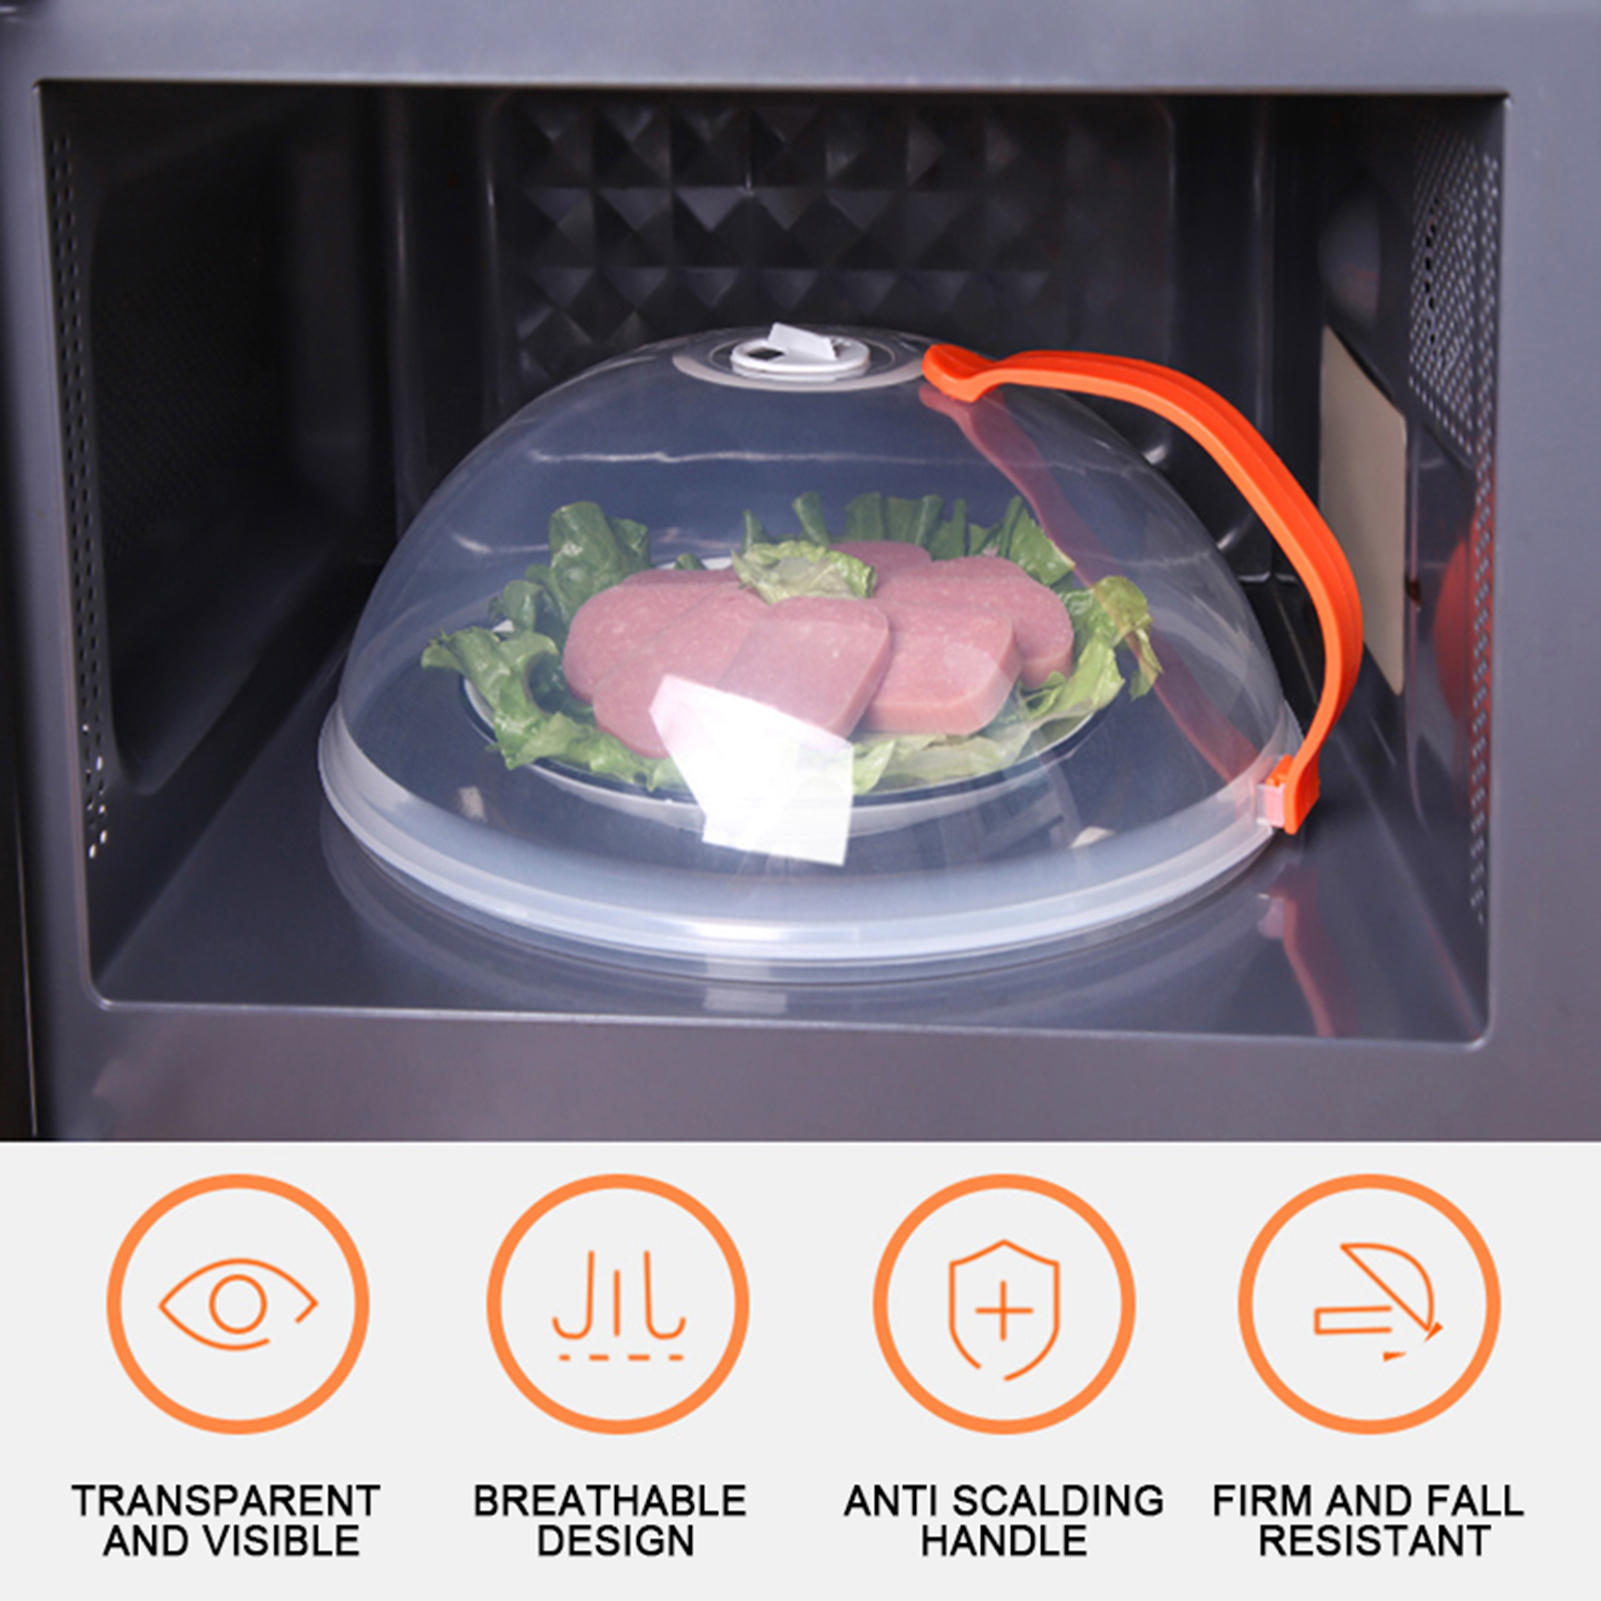 Nắp đậy Lò Vi Sóng chống bám bẩn - Nhựa PC dẻo. Dụng cụ nhà bếp Tiện dụng Đa Năng dùng như lòng bàn bảo vệ thực phẩm trên bàn ăn, chịu nhiệt cao đến 200°C, chống văng và bám bẩn trong lò vi sóng Microwave